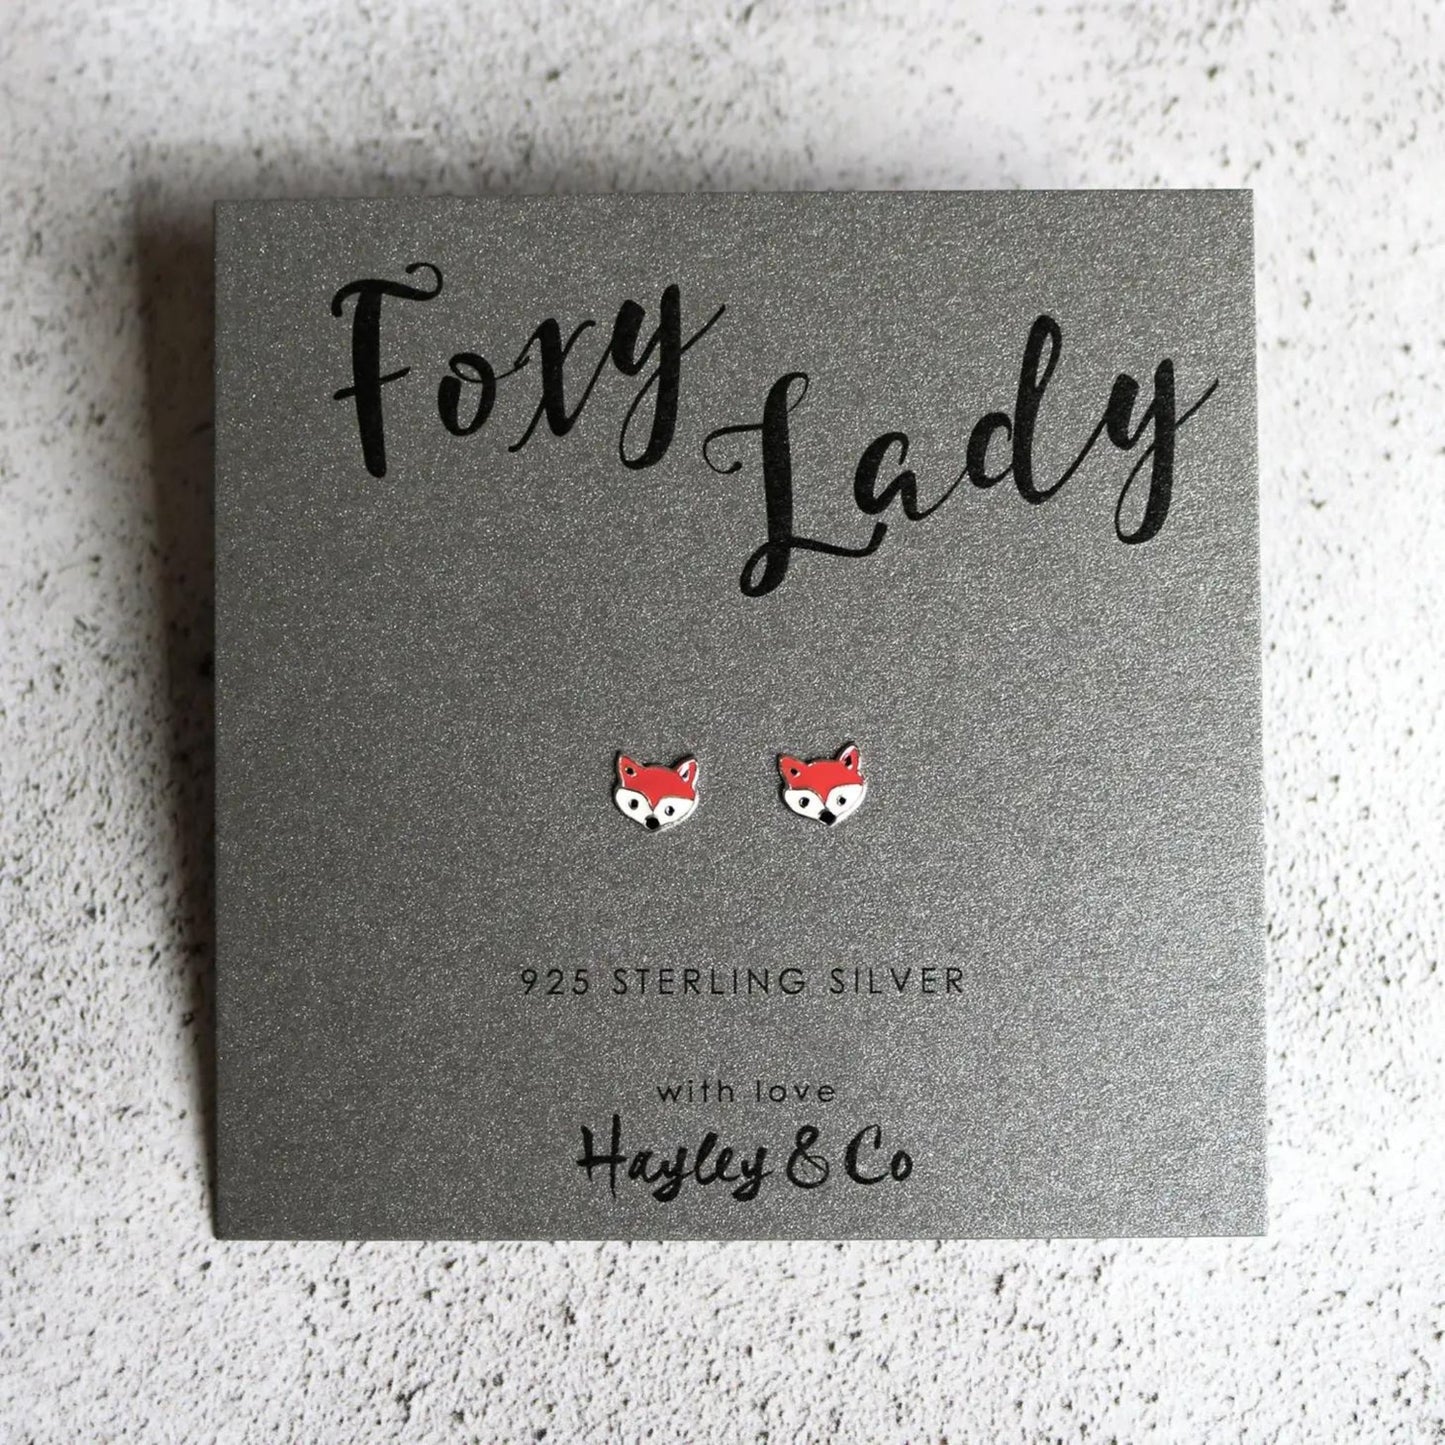 Foxy Lady Sterling Silver Earrings - The Little Jewellery Company